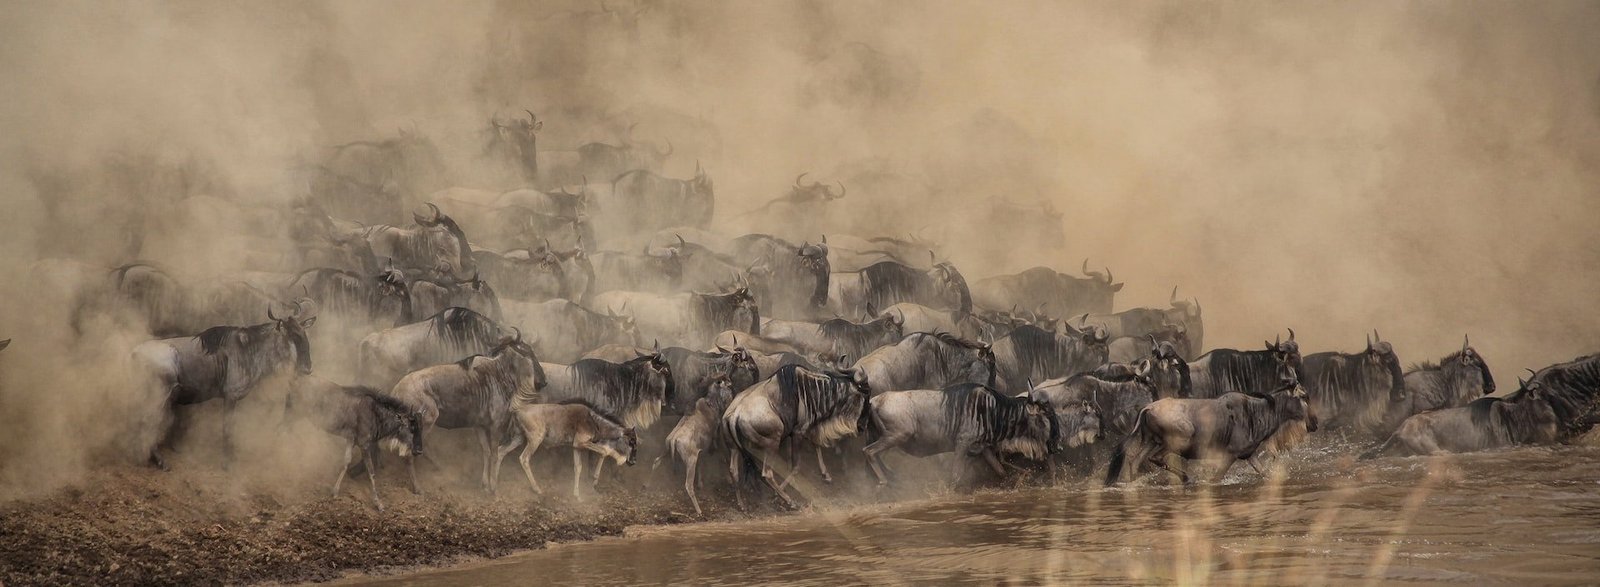 The great migration Maasai Mara Migration, Tanzania Serengeti